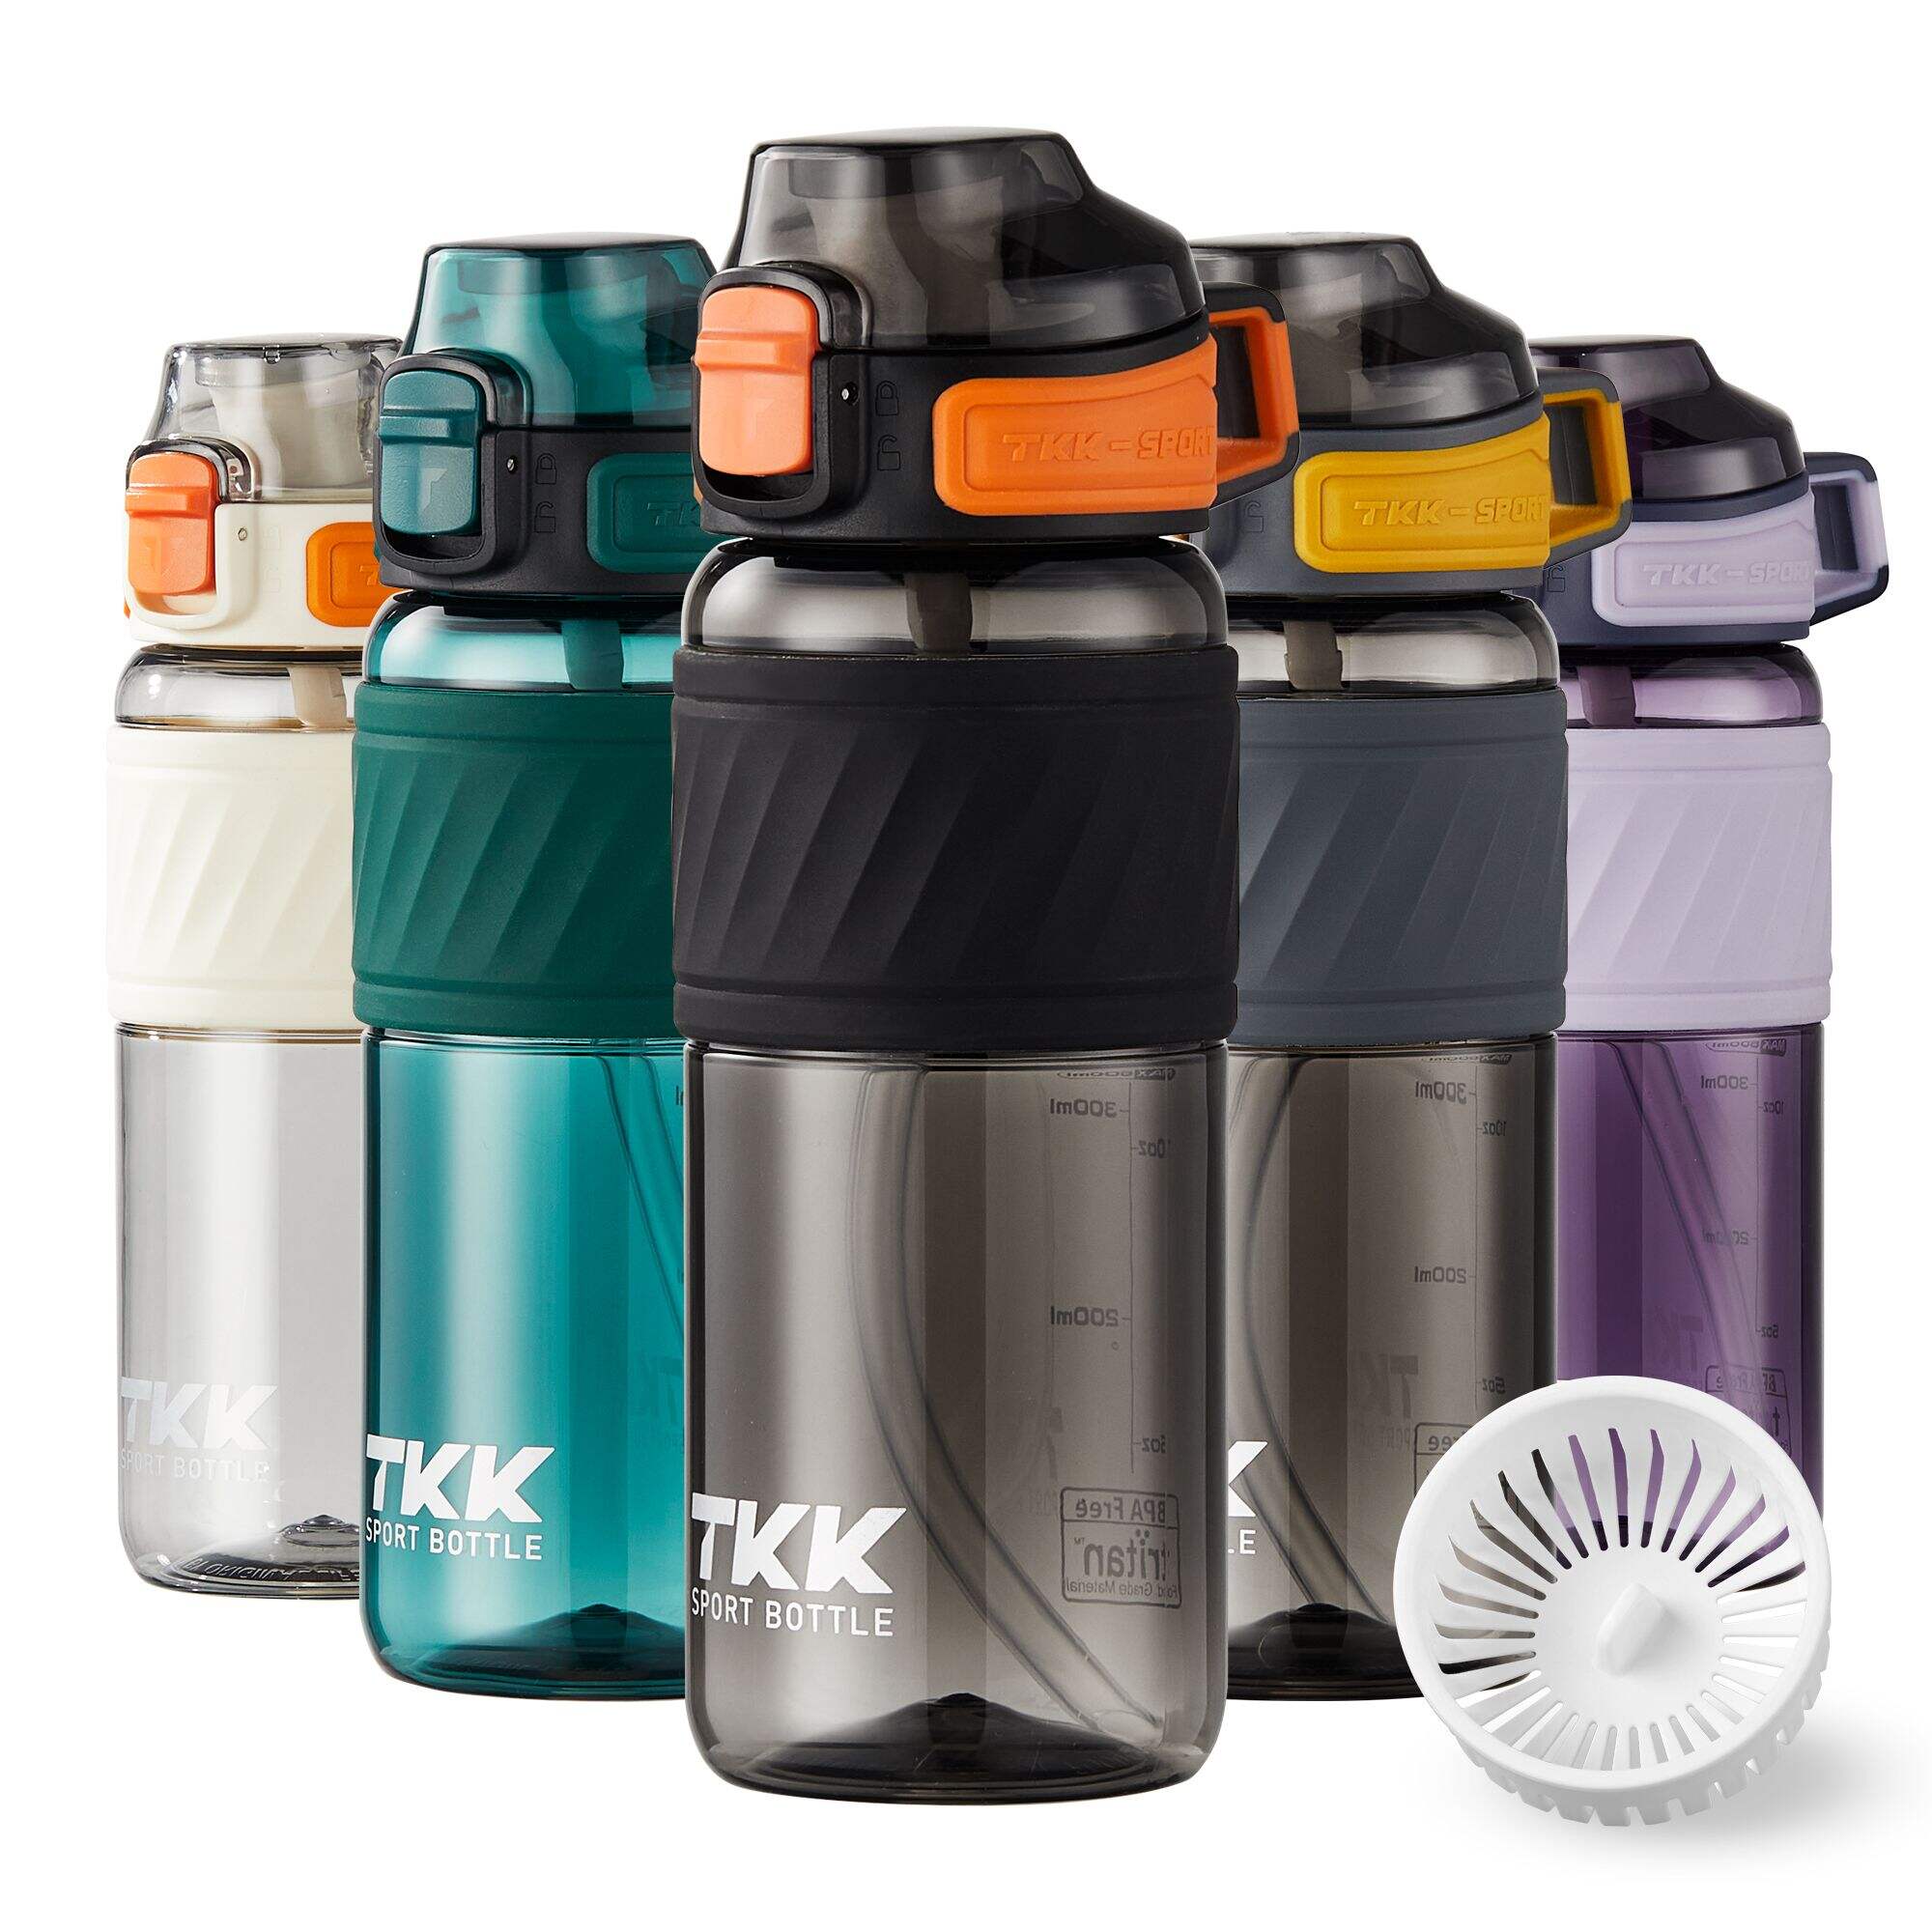 زجاجة مياه بلاستيكية TKK سعة 16 أونصة/20 أونصة مع قش للأطفال، زجاجة مياه للمدرسة، آمنة للاستخدام في غسالة الأطباق، خالية من مادة BPA، تريتان مانعة للتسرب، رياضية في الهواء الطلق، غطاء مفتوح قابل للقفل